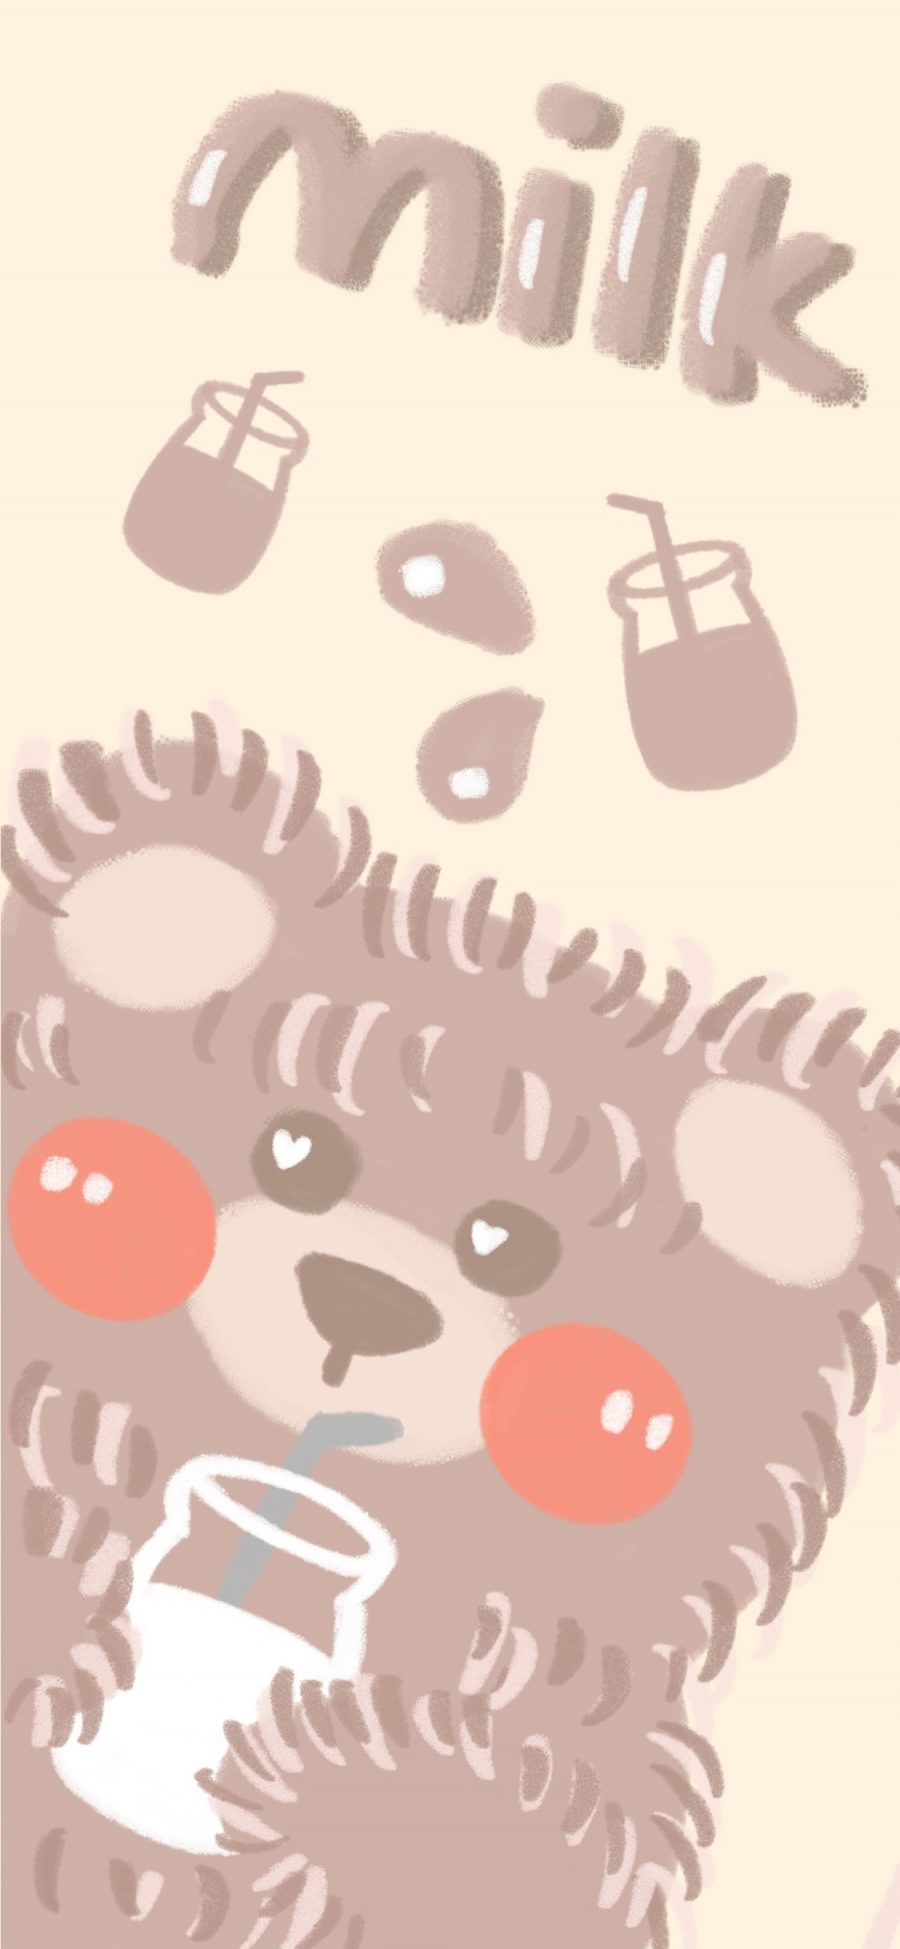 [2436×1125]milk 小熊 毛绒 可爱 苹果手机动漫壁纸图片